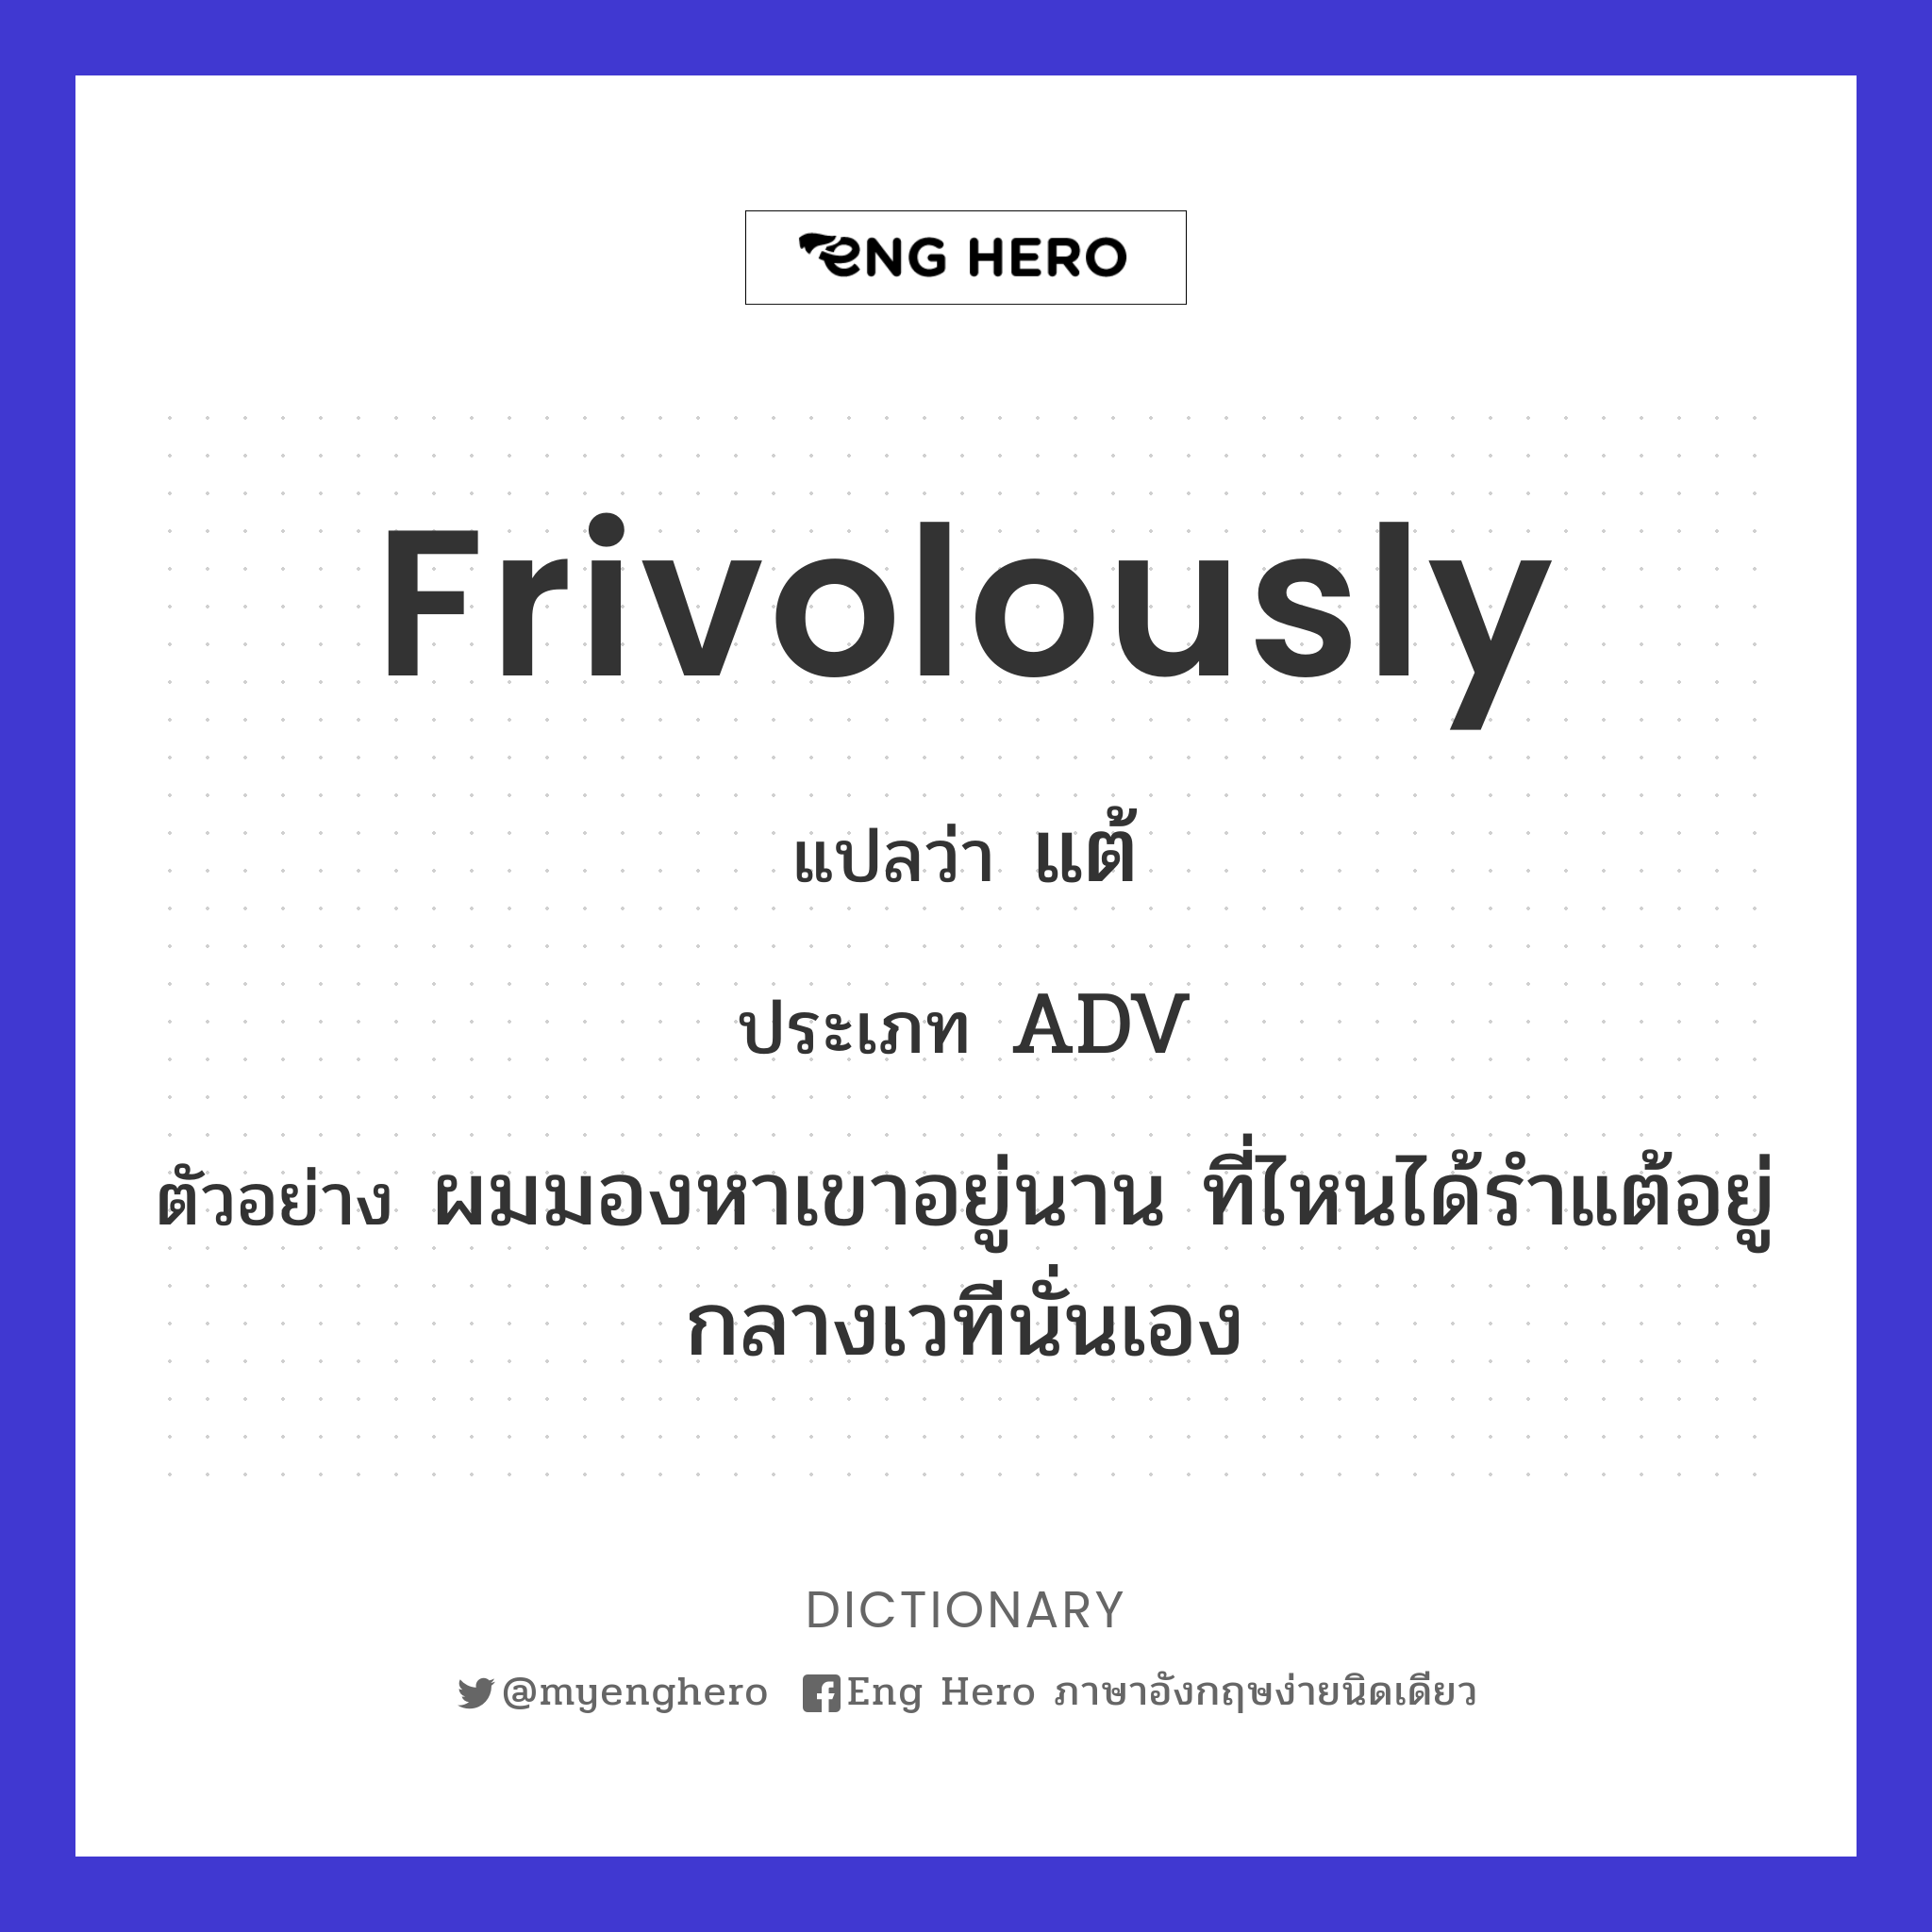 frivolously